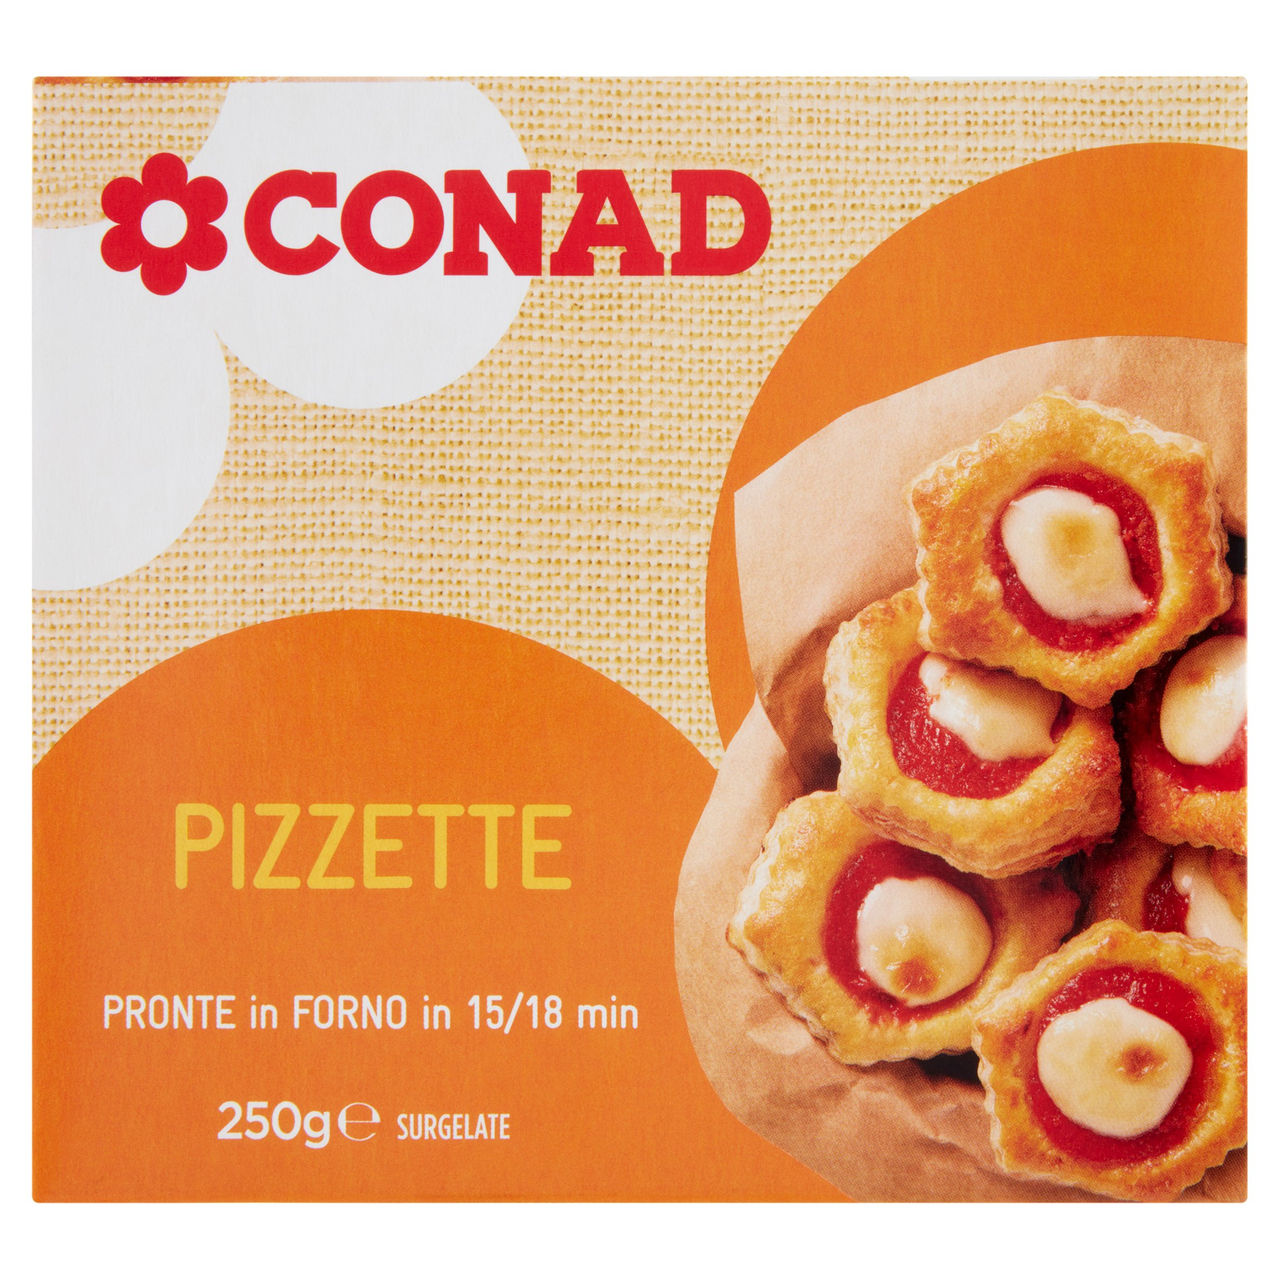 Pizzette Surgelate 250 g Conad